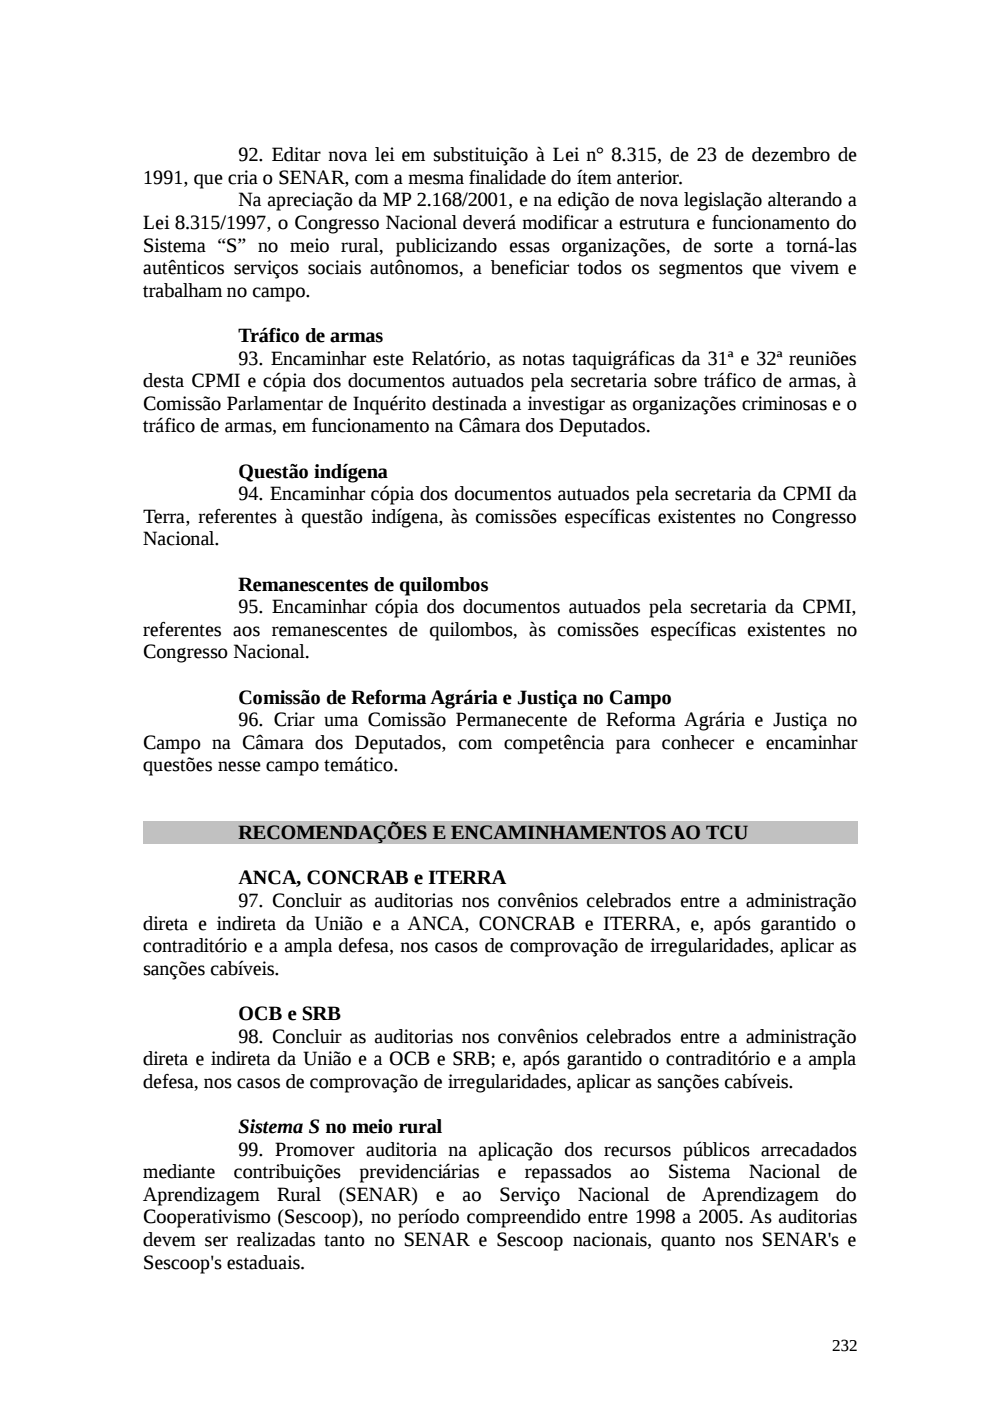 Page 232 from Relatório final da comissão